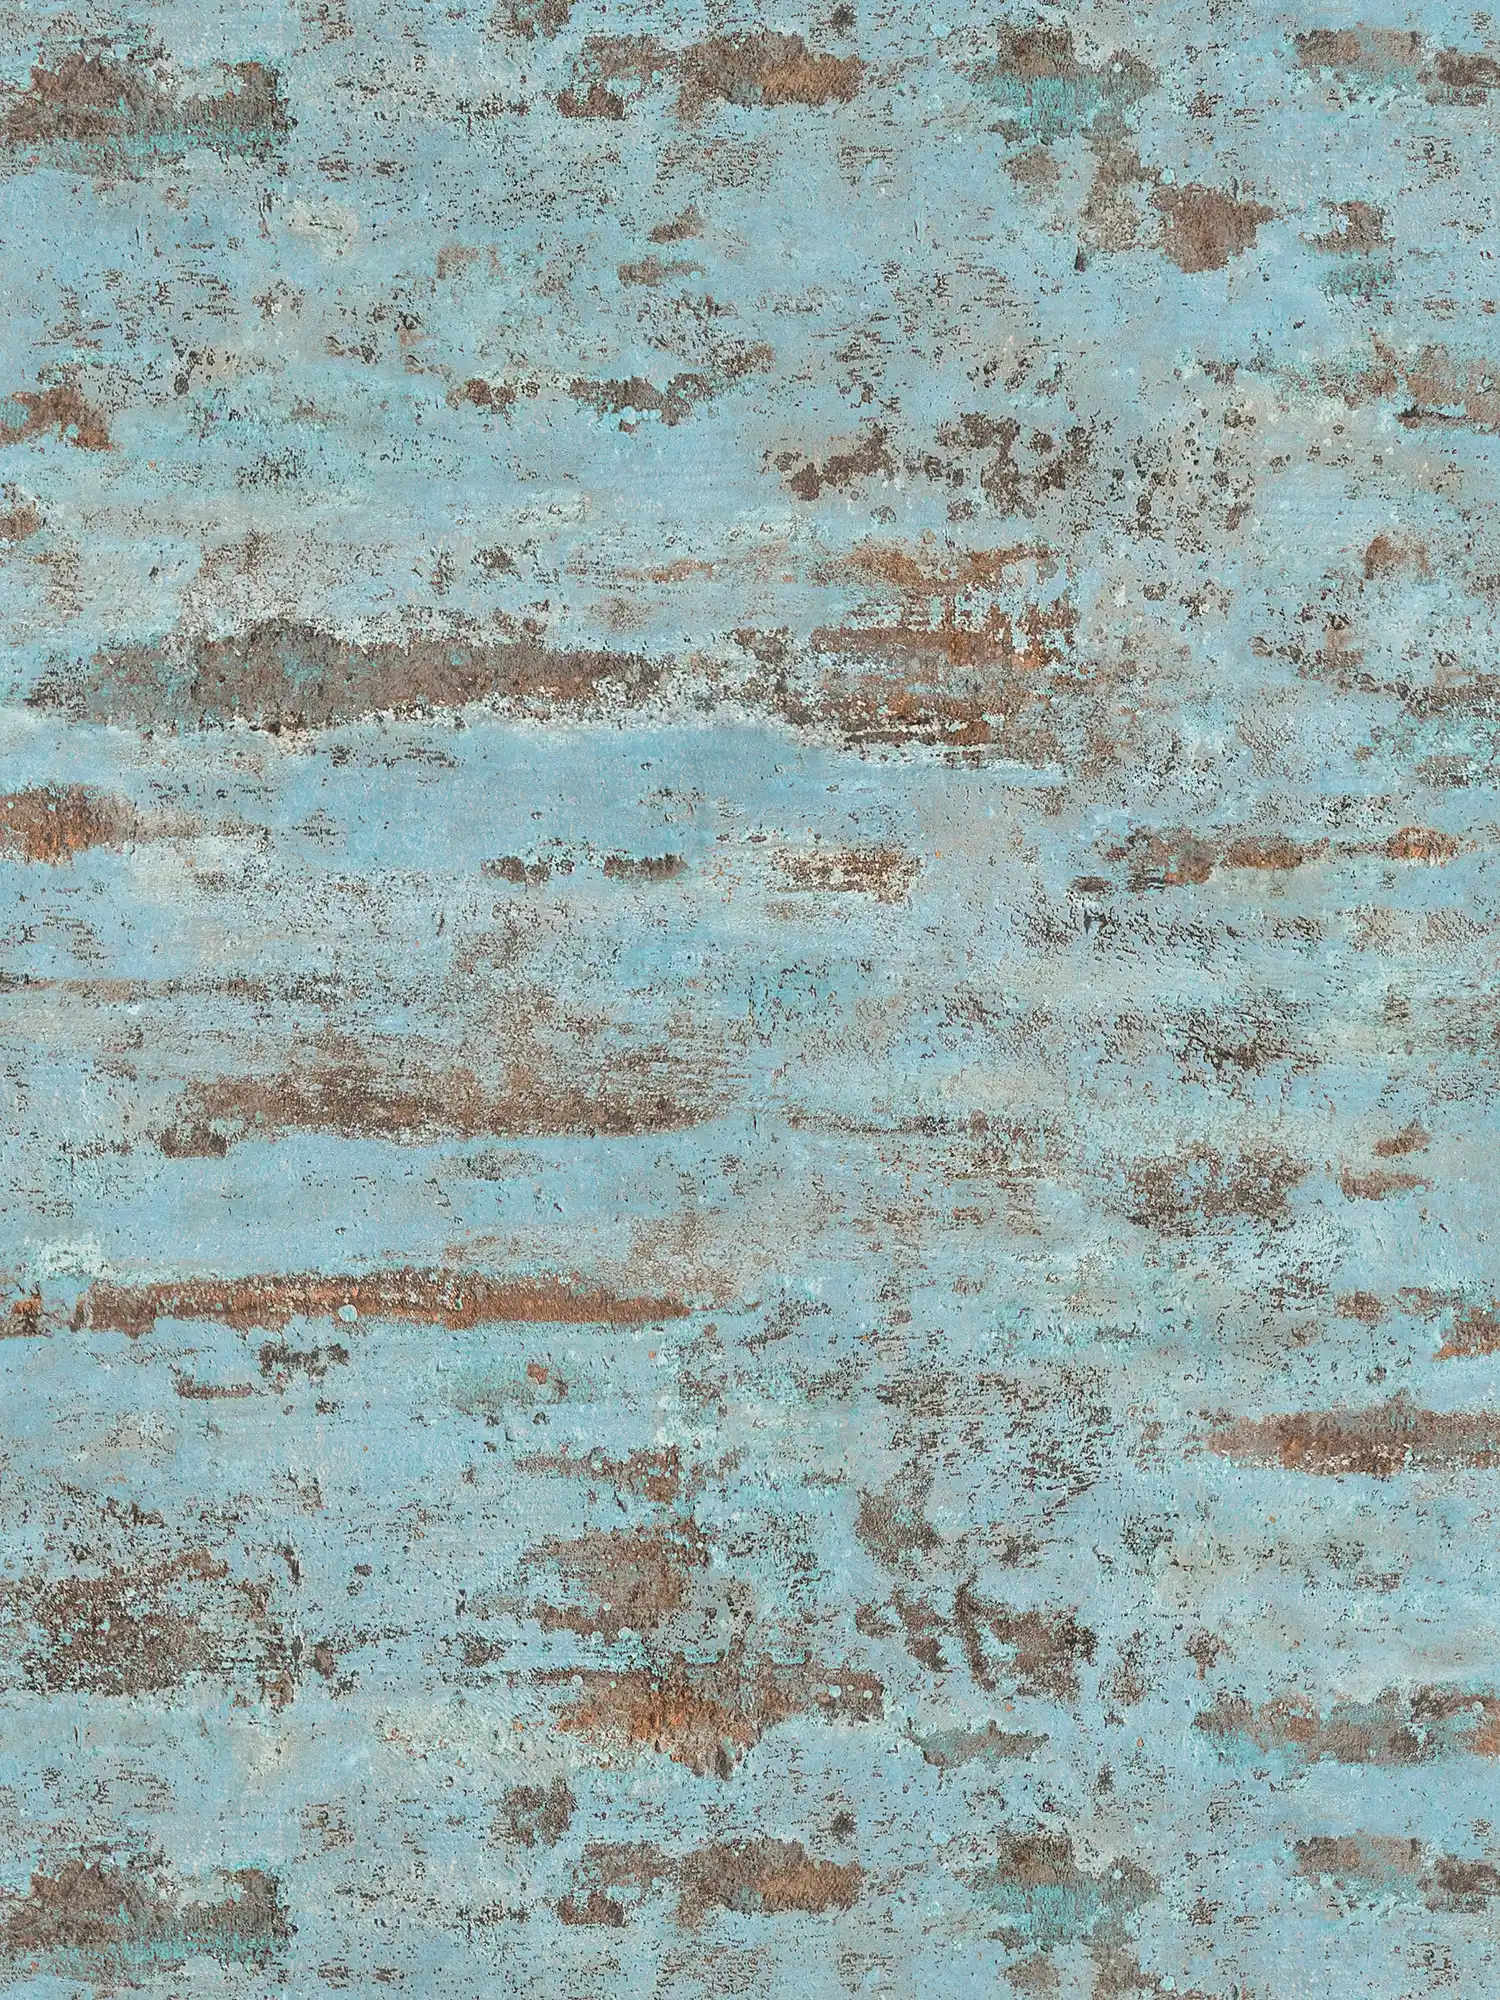 Papel pintado no tejido Óptica oxidada Diseño metálico oxidado - azul, marrón
